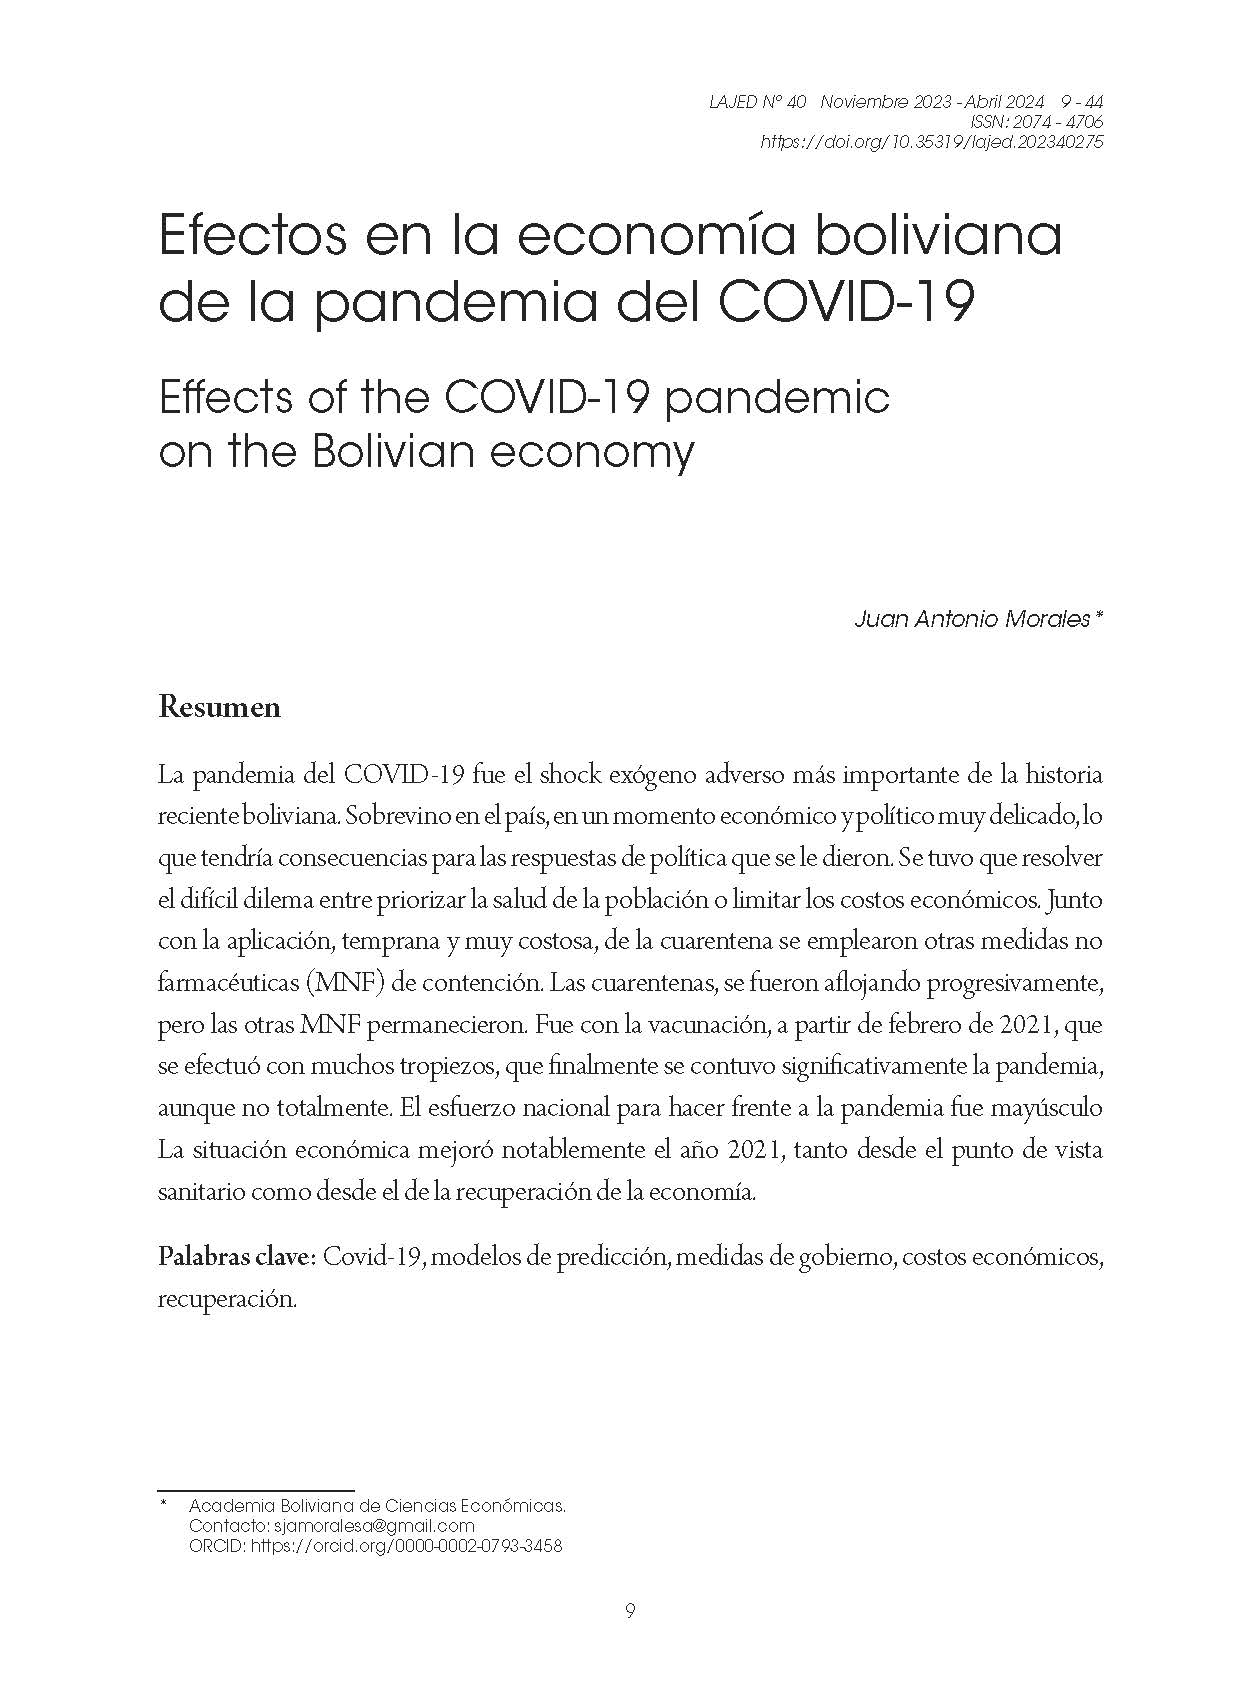 Efectos en la economía boliviana de la pandemia del COVID-19